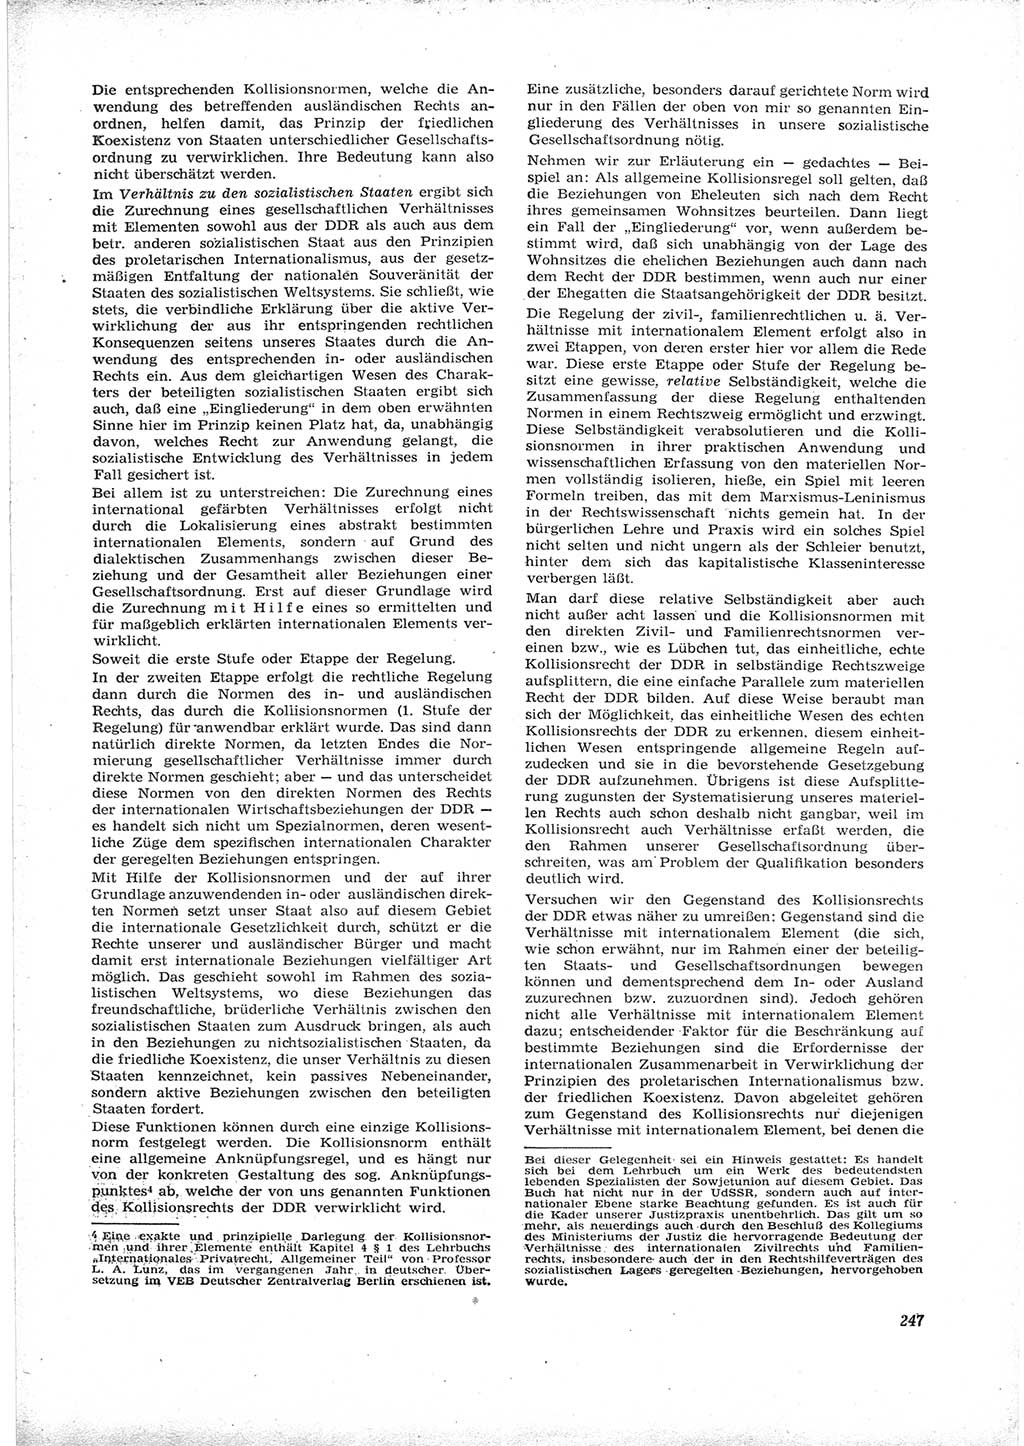 Neue Justiz (NJ), Zeitschrift für Recht und Rechtswissenschaft [Deutsche Demokratische Republik (DDR)], 16. Jahrgang 1962, Seite 247 (NJ DDR 1962, S. 247)